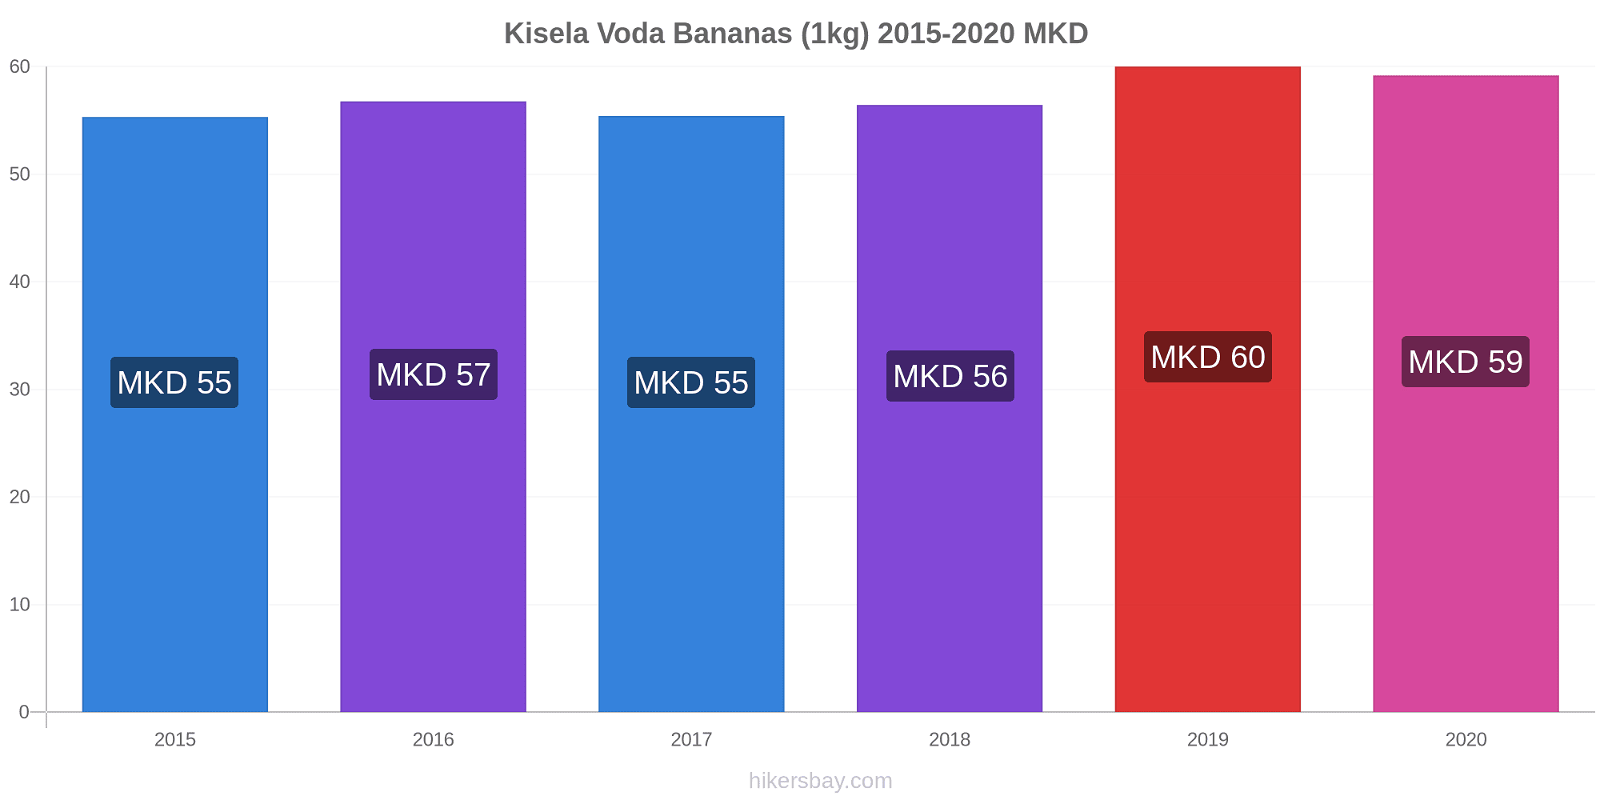 Kisela Voda variação de preço Banana (1kg) hikersbay.com